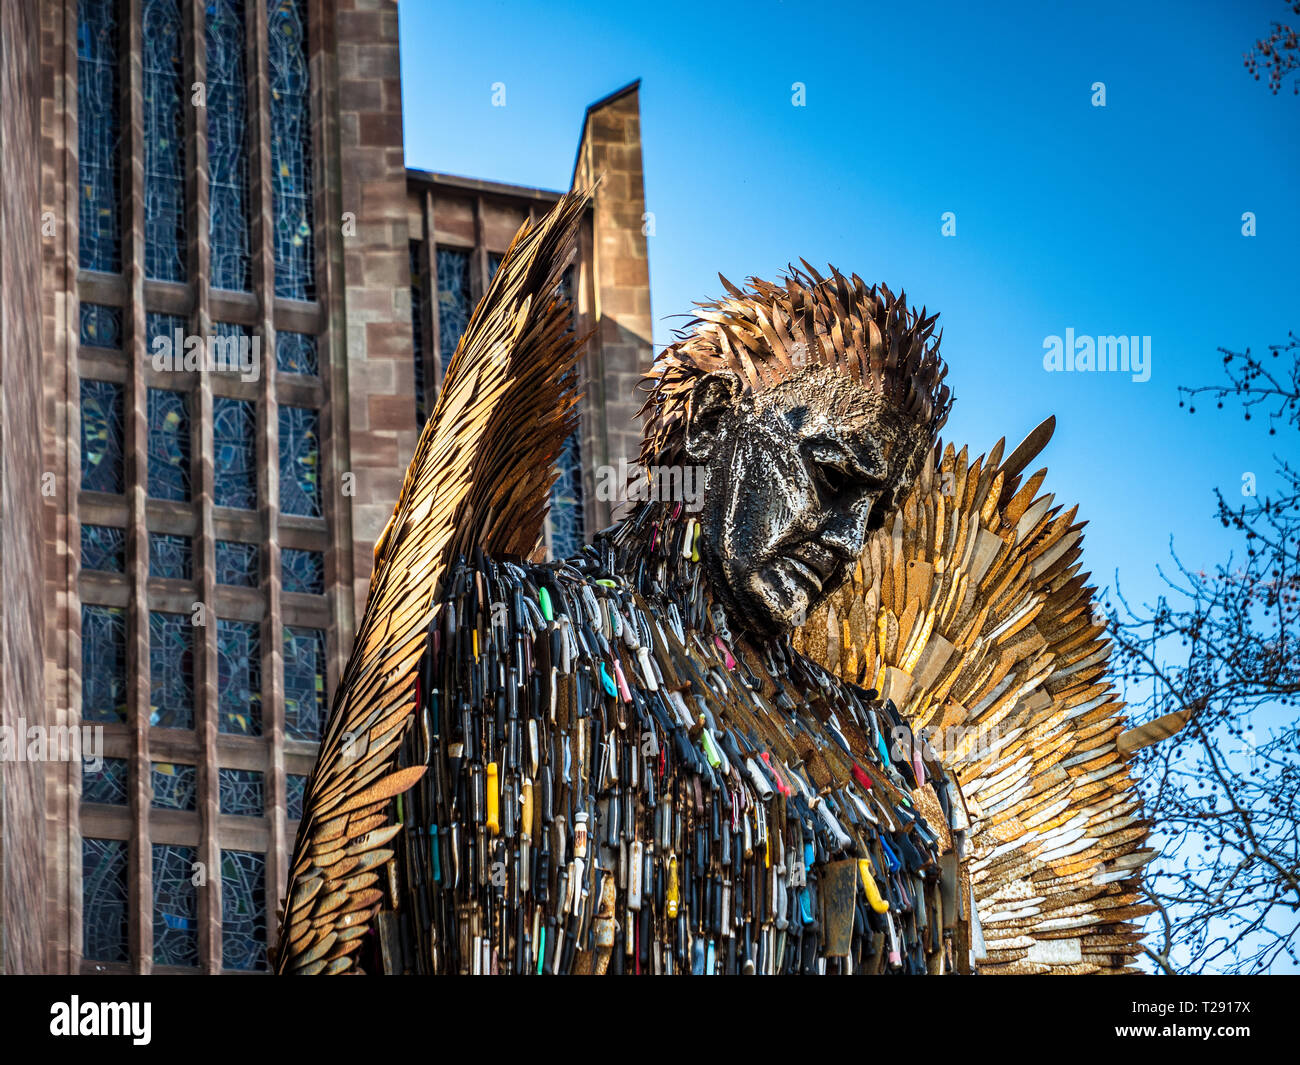 Statua dell'angelo del coltello Coventry Cathedral - 8m scultura dell'angelo del coltello realizzata da 100.000 pale consegnate alla polizia in tutto il Regno Unito. Artista Alfie Bradley Foto Stock